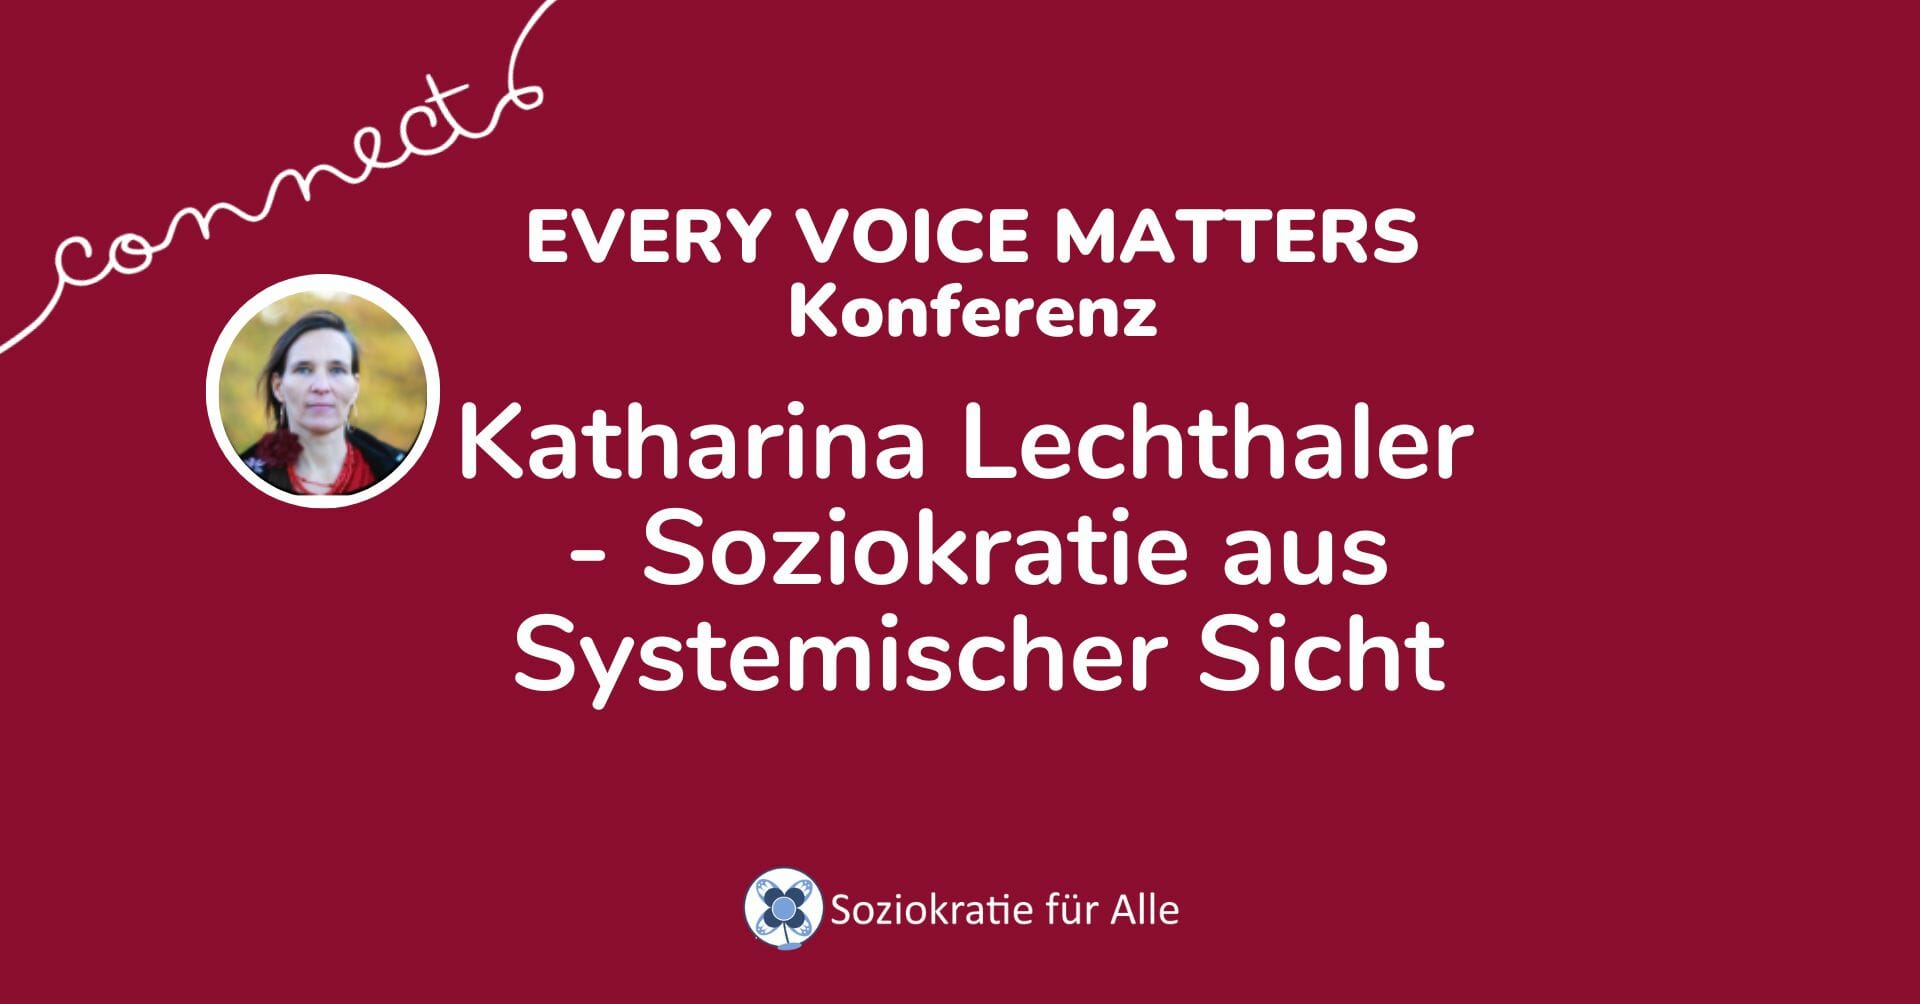 Katharina Lechthaler – Soziokratie aus Systemischer Sicht